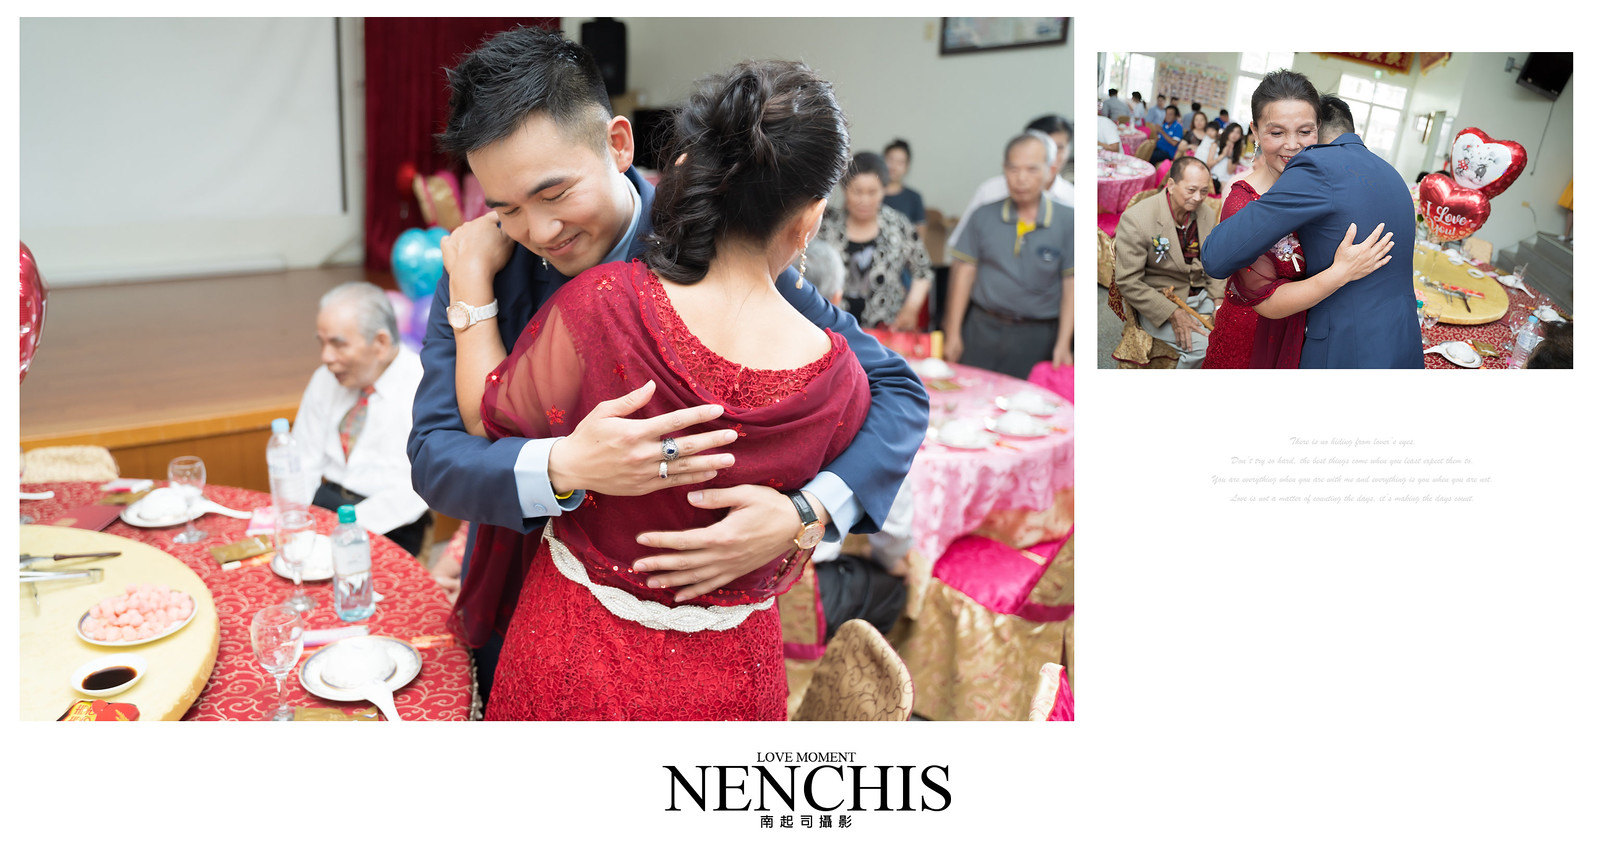 台南婚攝,婚禮攝影,飛行員婚禮,安定新吉里活動中心,Nenchis